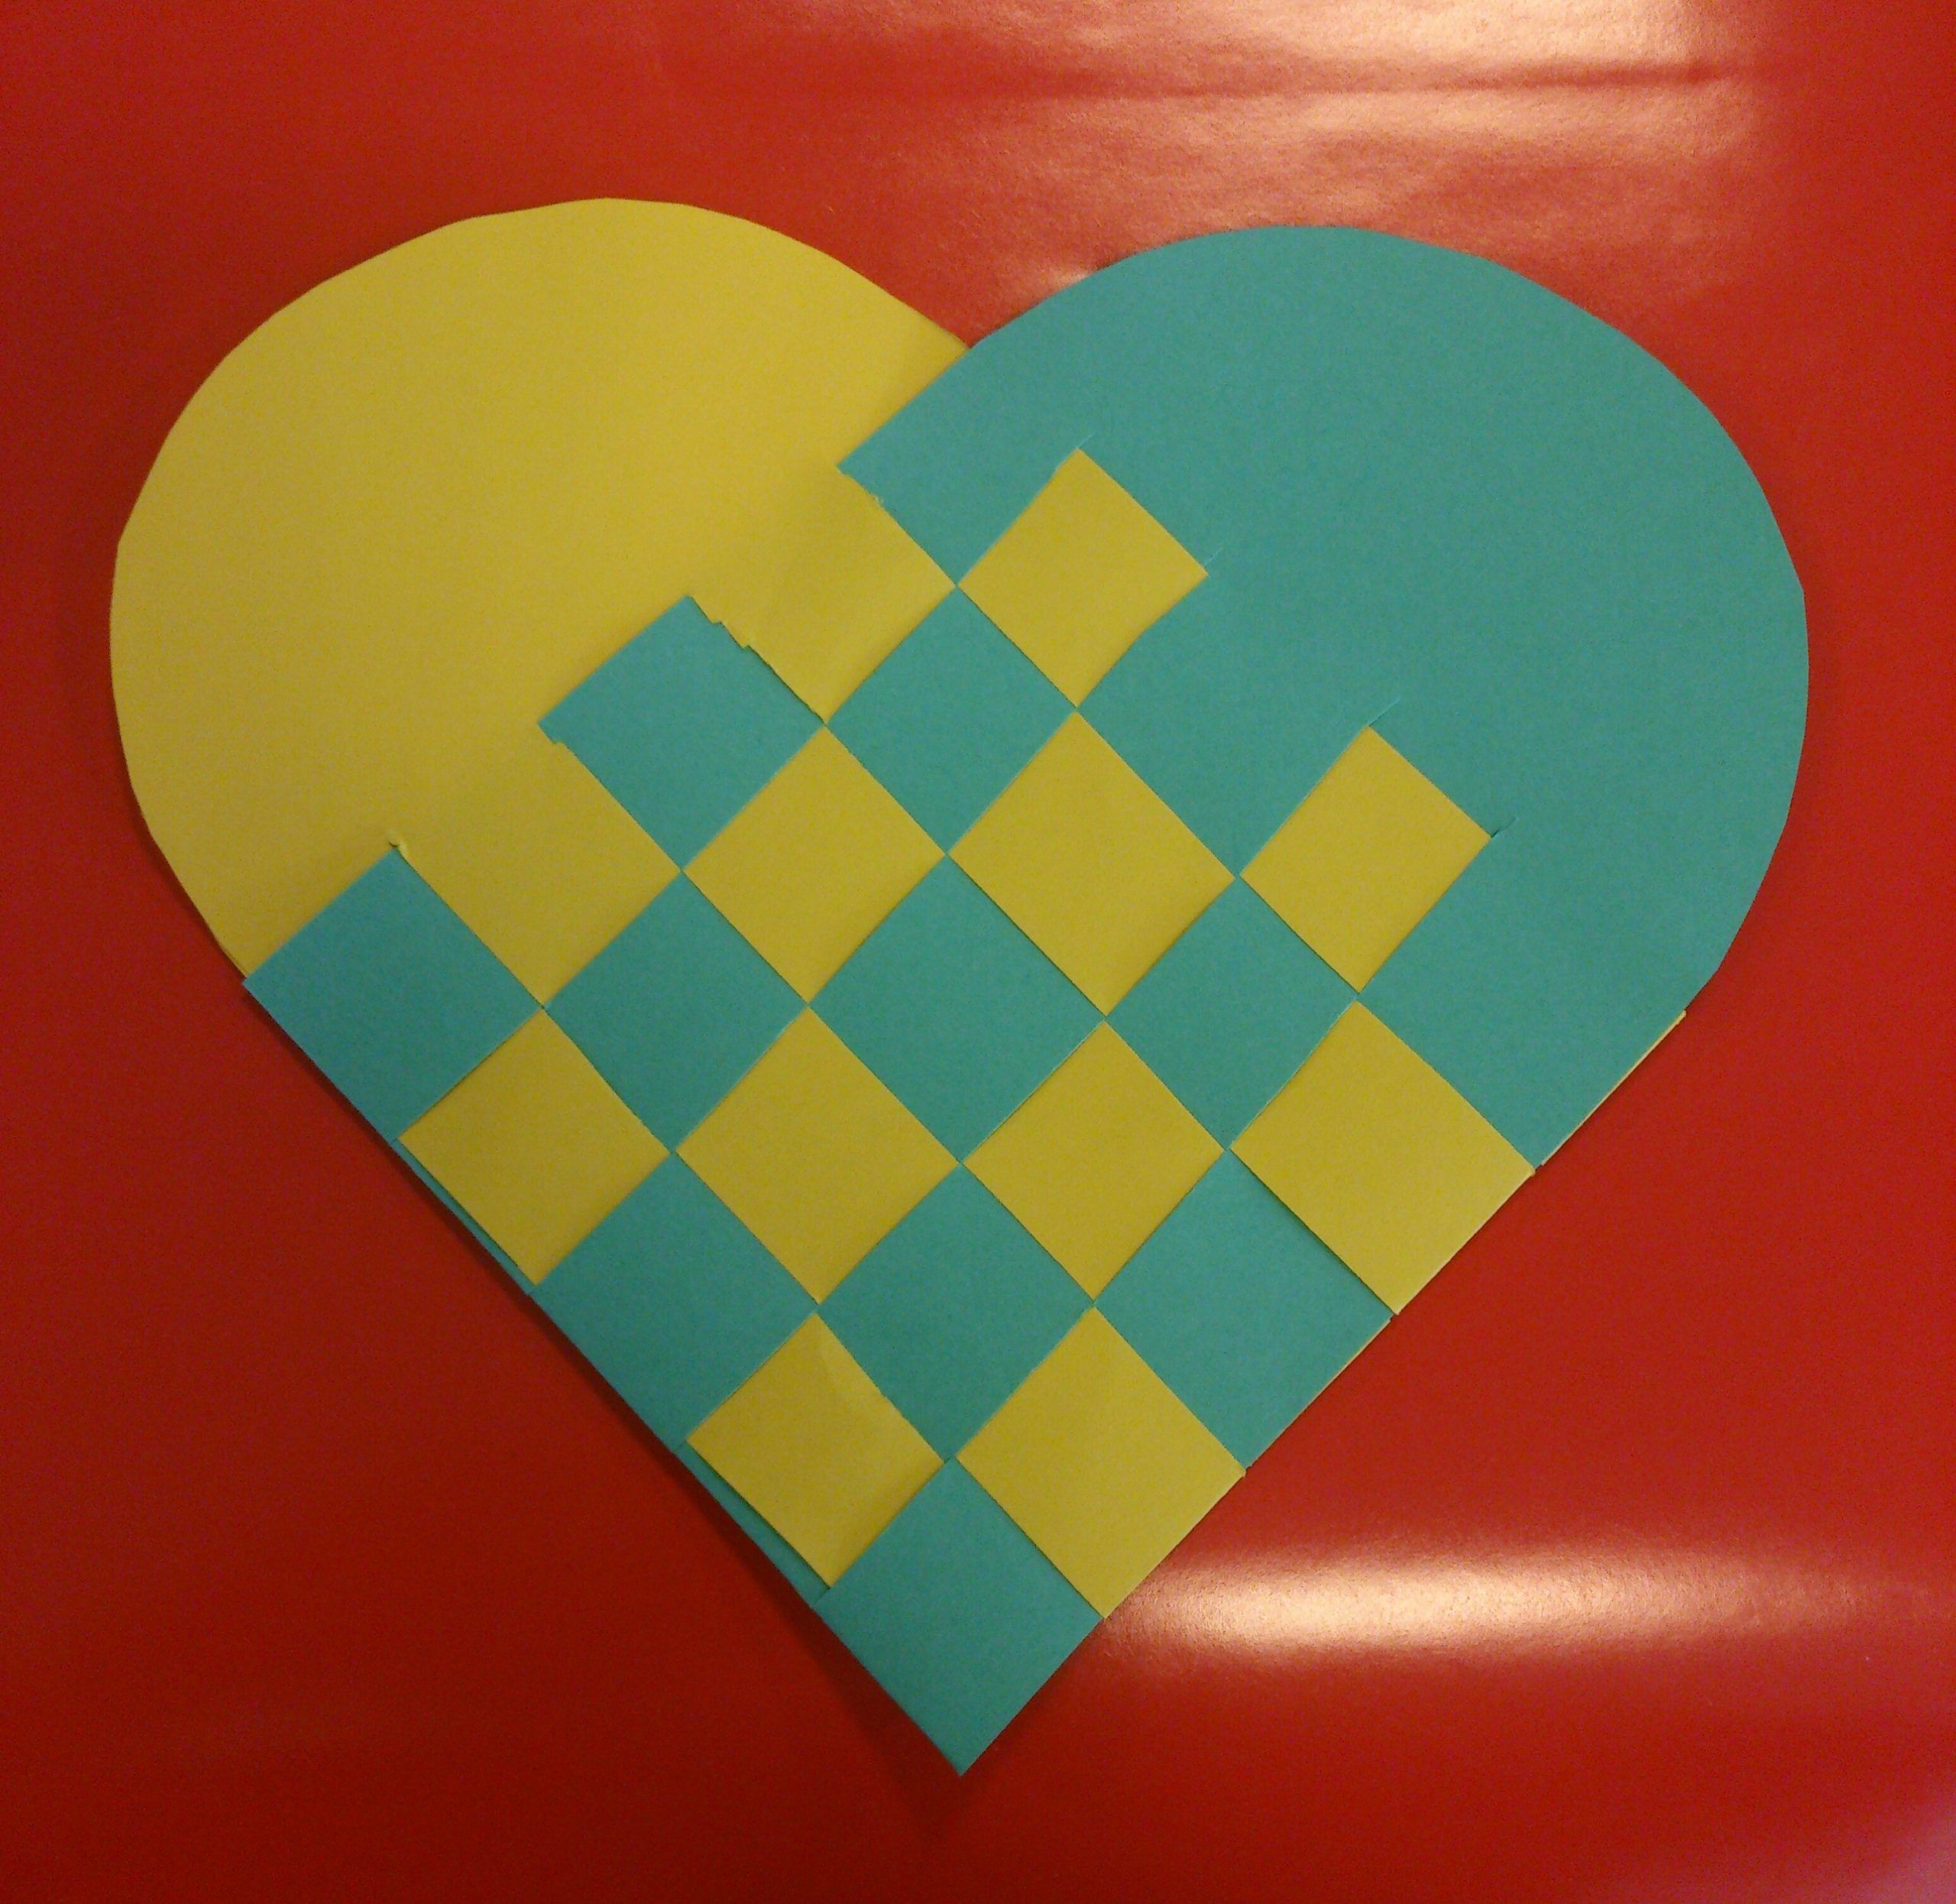 Xmas in Denmark: How to make … a Danish Xmas Heart